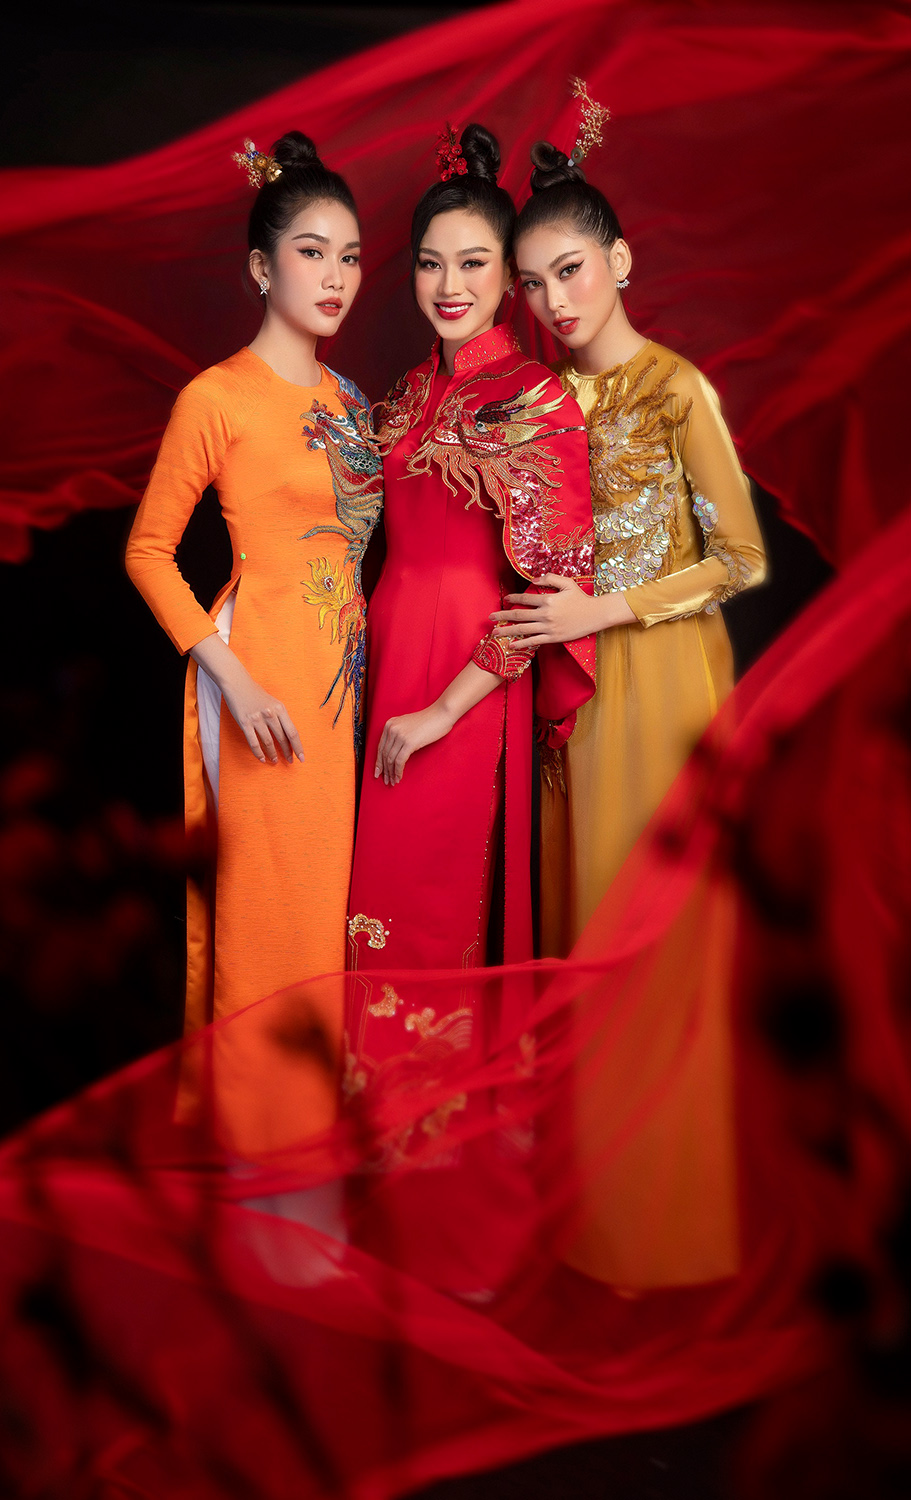 Top 3 Hoa hậu Việt Nam trong những thiết kế lấy cảm hứng từ việc tôn vinh nữ quyền